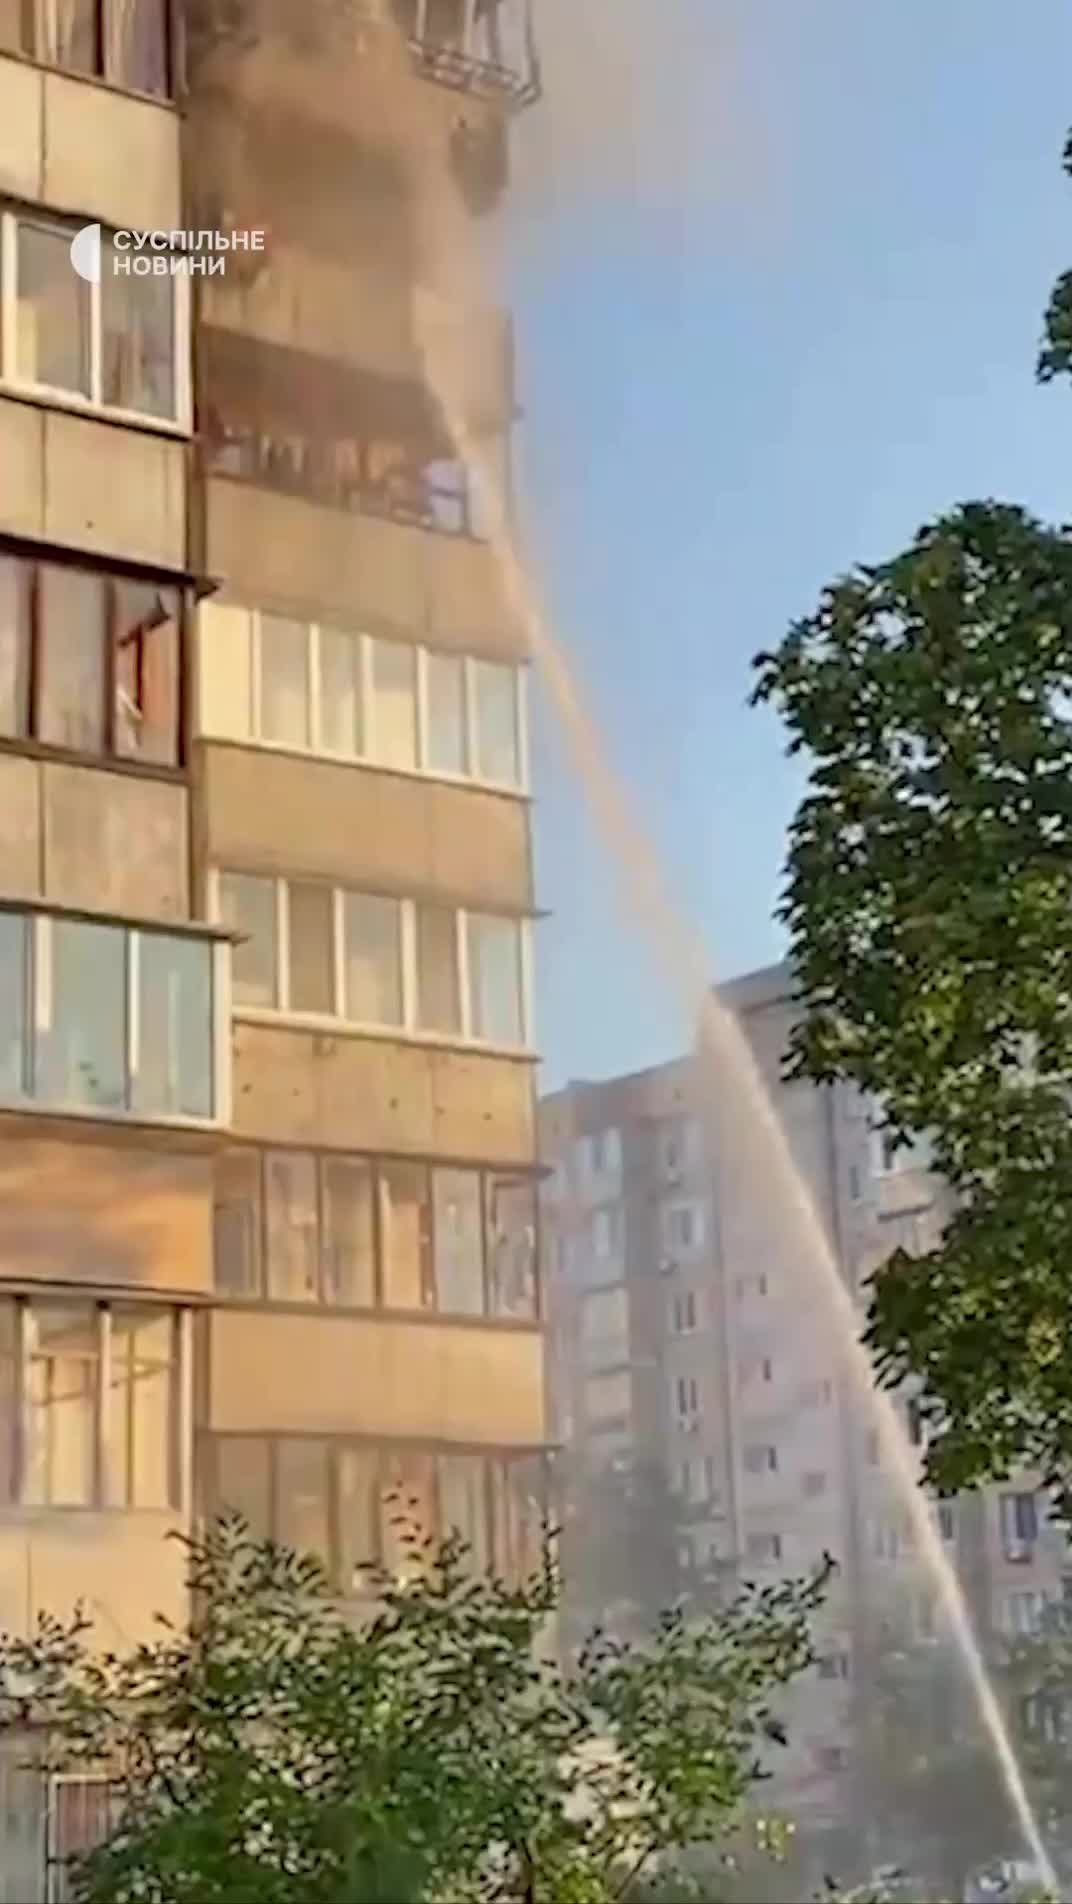 კიევის ობოლონსკის რაიონში რუსული სარაკეტო დარტყმის შედეგად საცხოვრებელი შენობა დაზიანდა